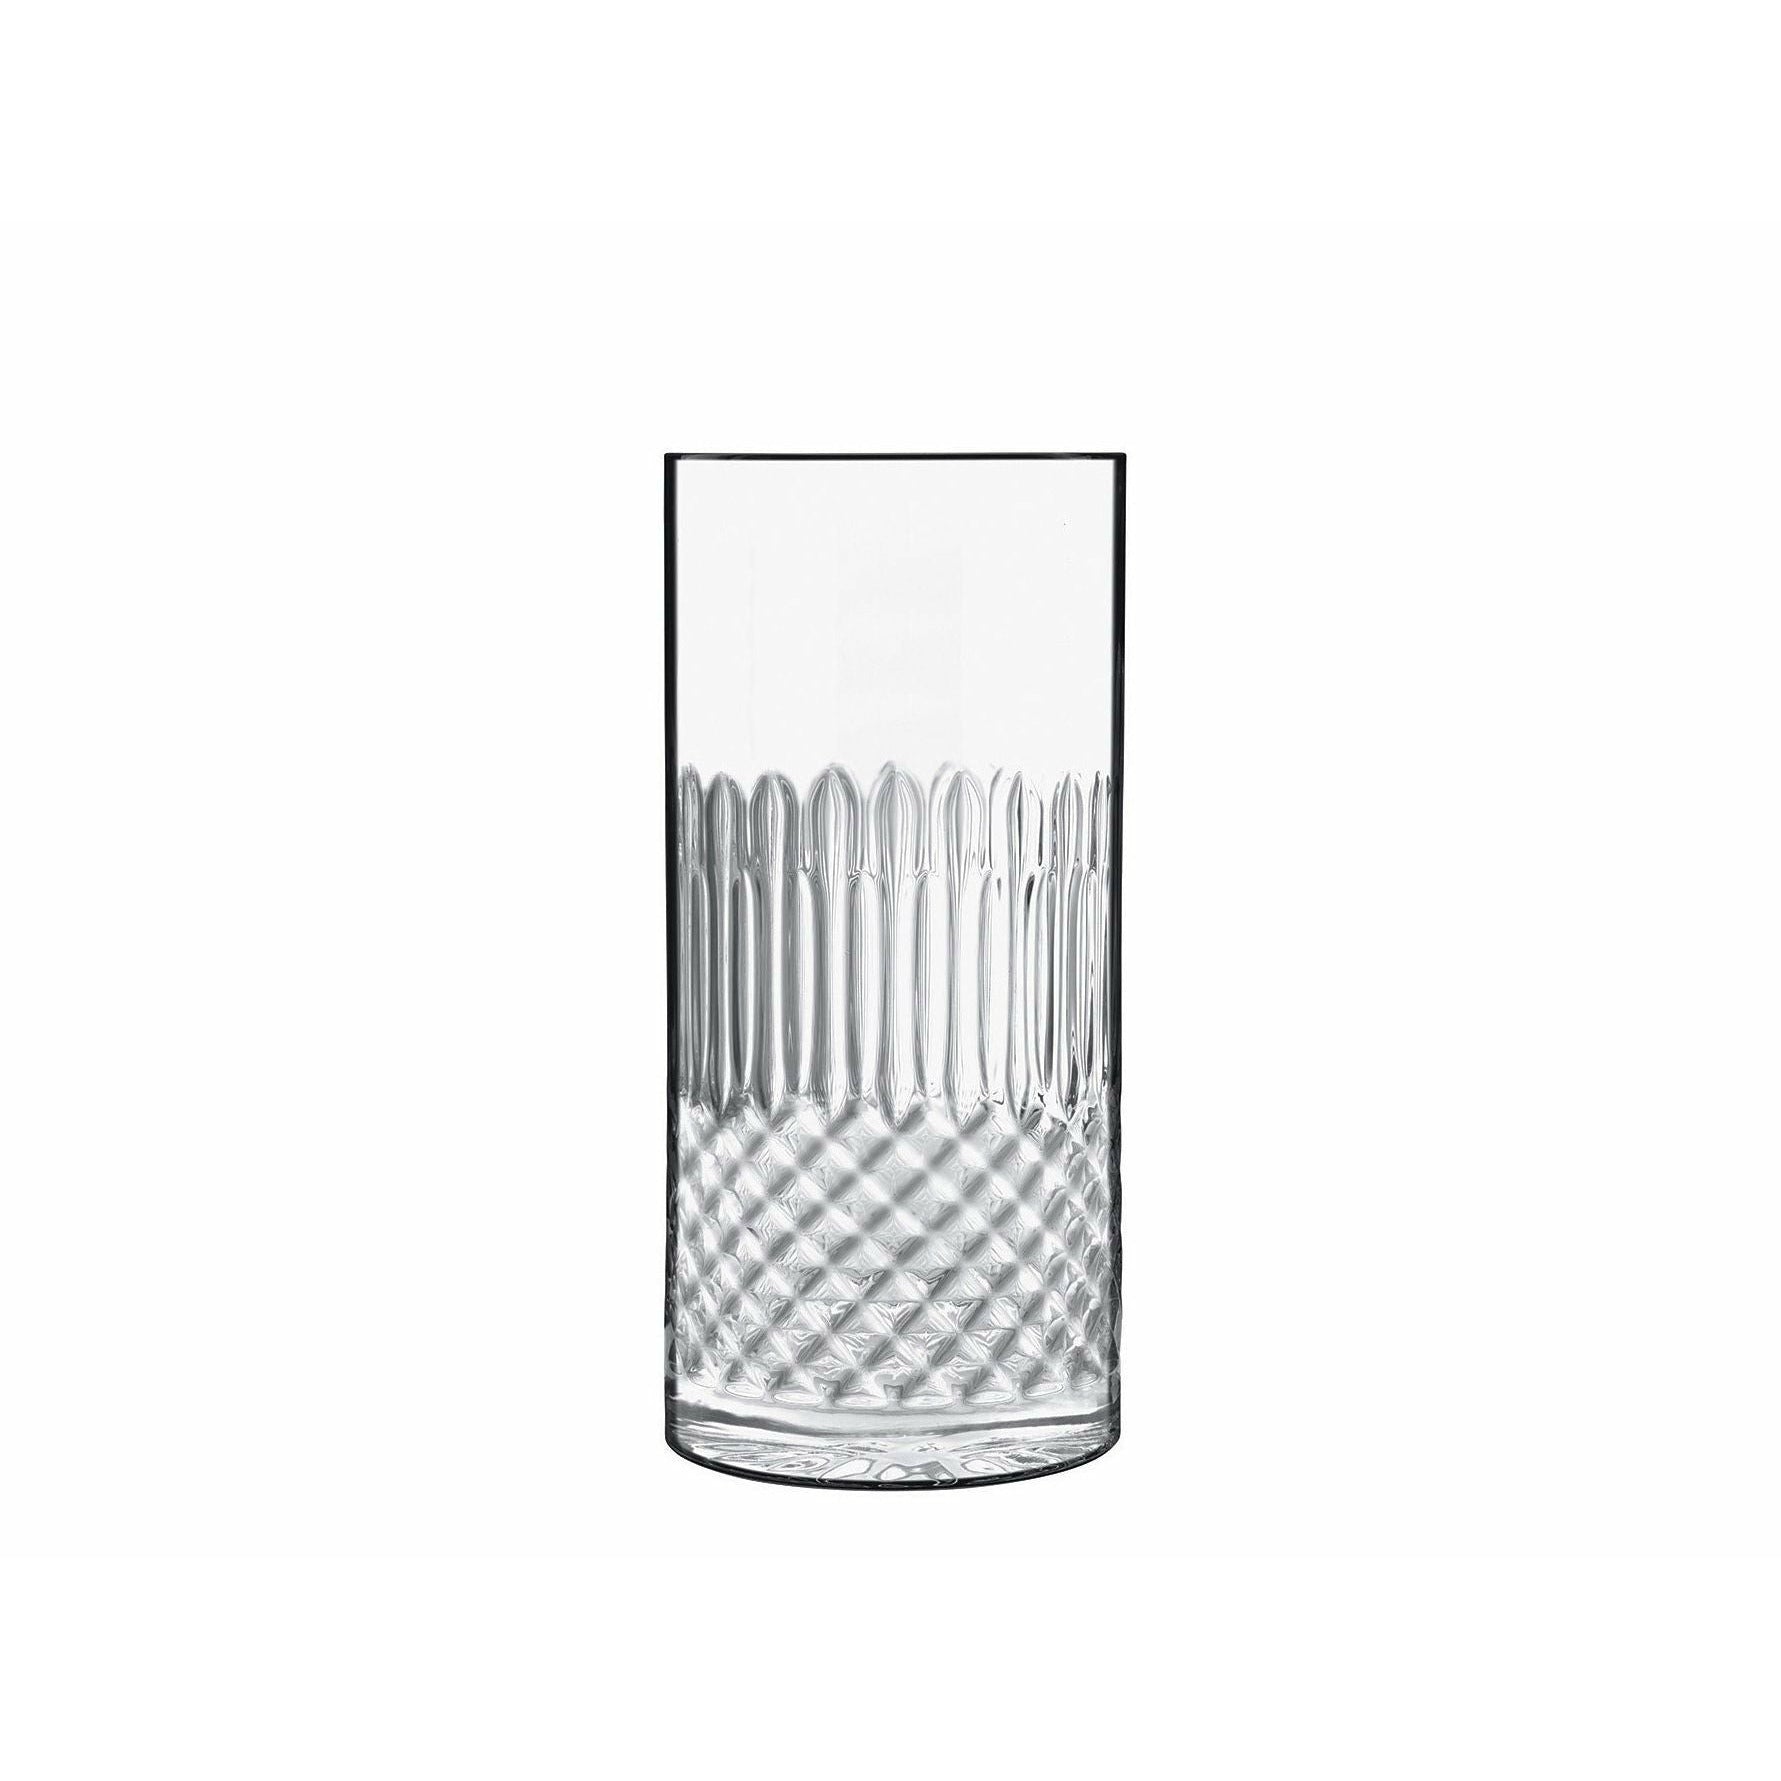 Luigi Bormioli Diamante ölglas/långt dryckglas, 4 st.